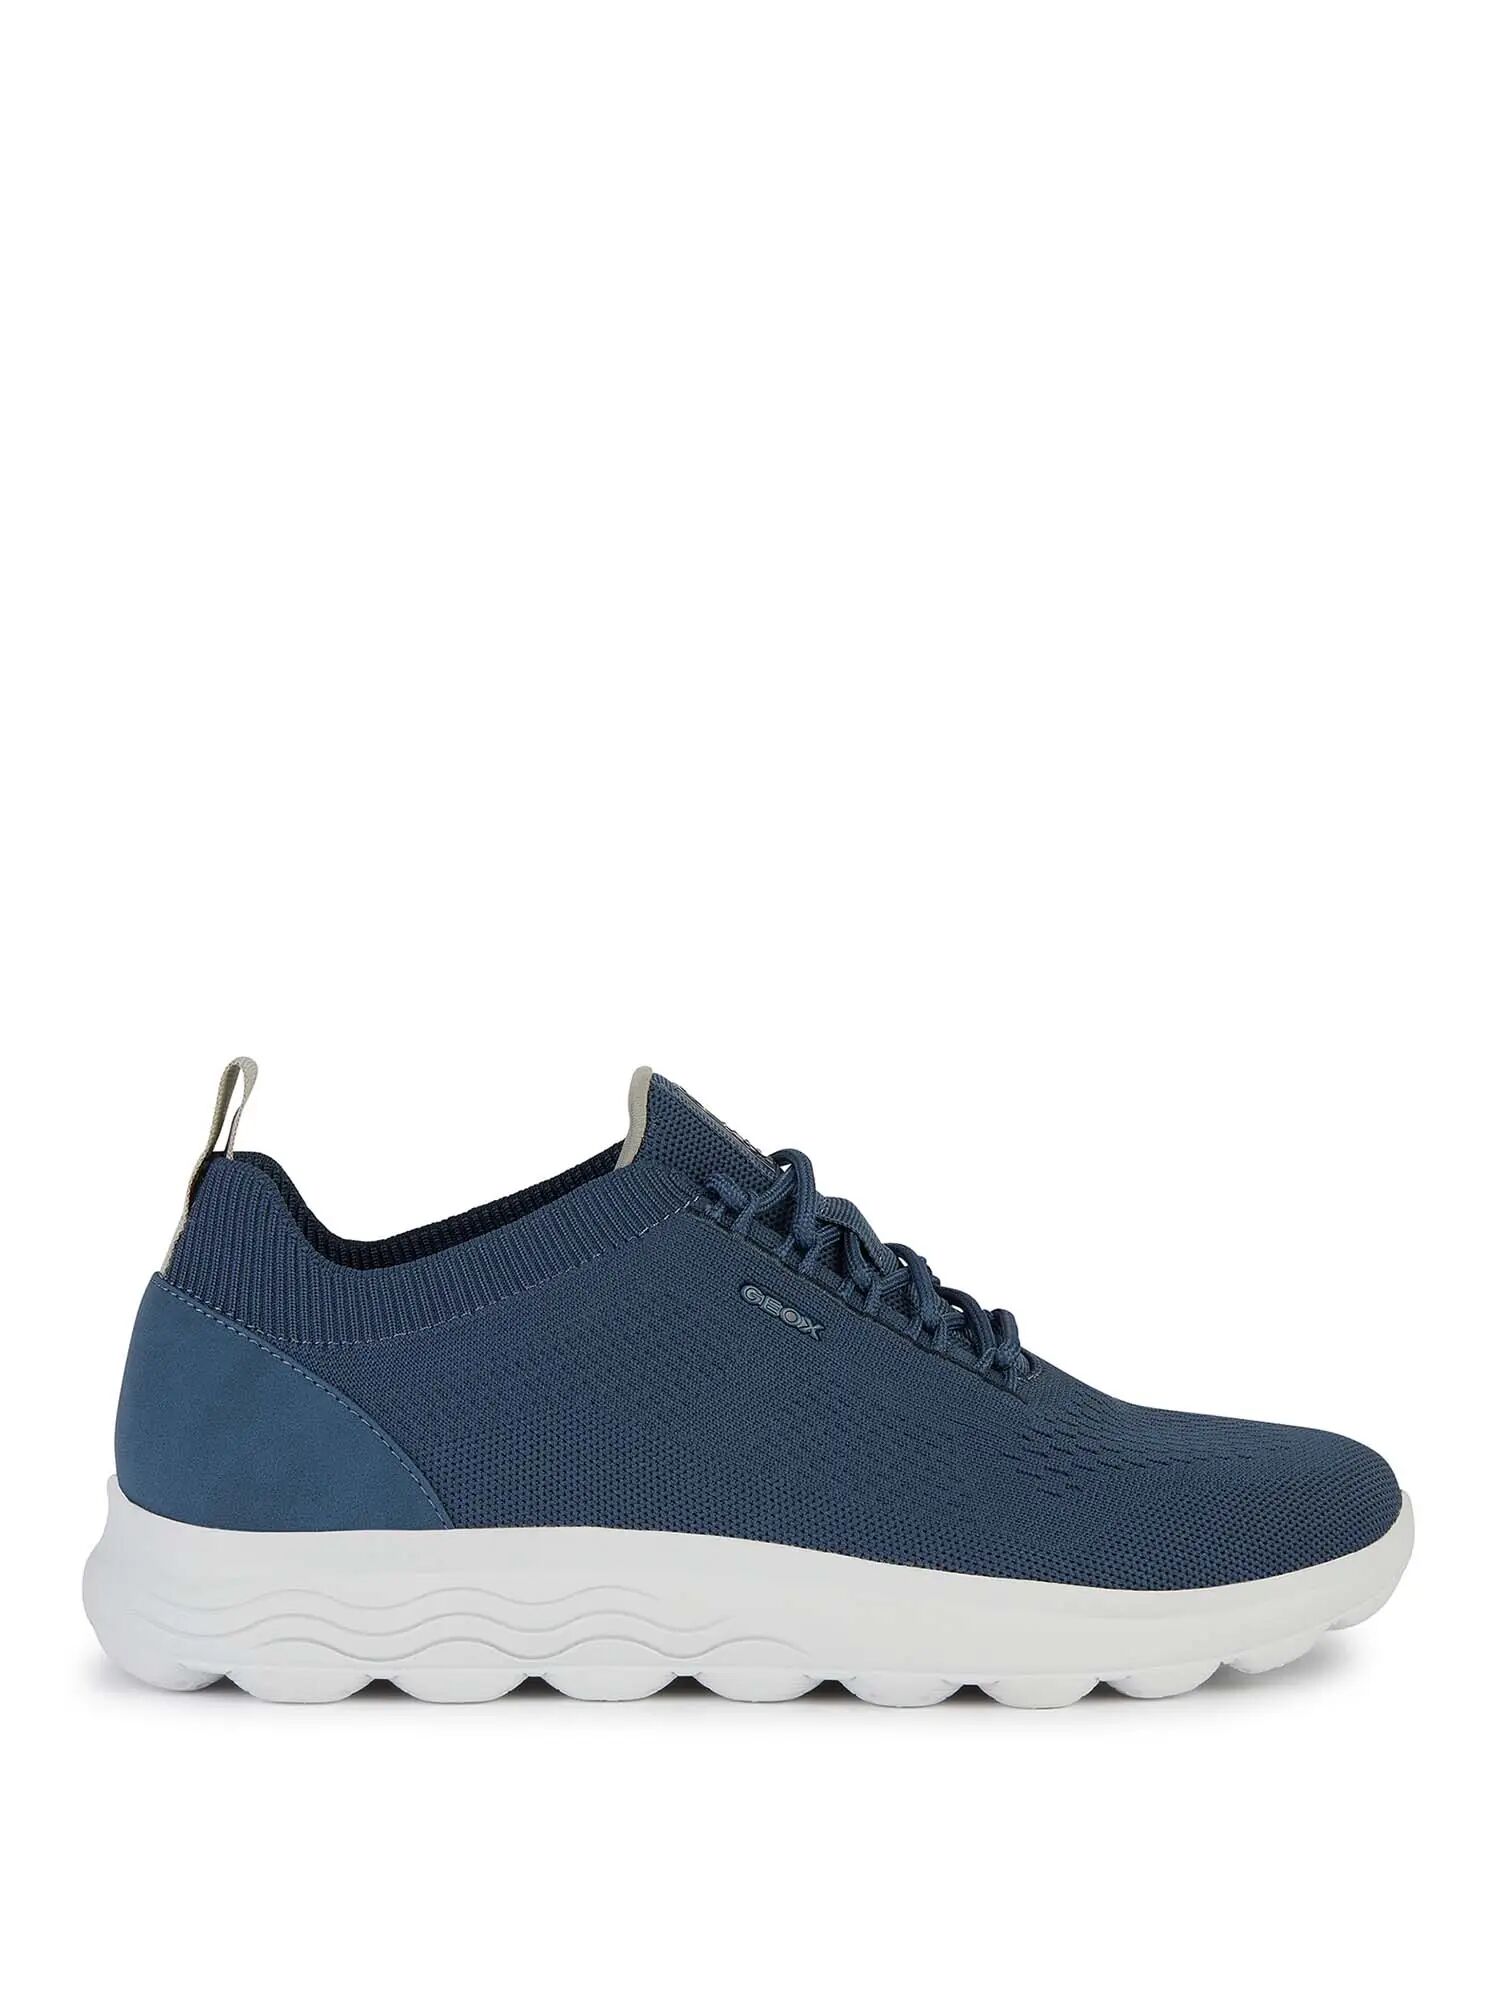 Geox Sneakers Uomo Colore Blu BLU 40